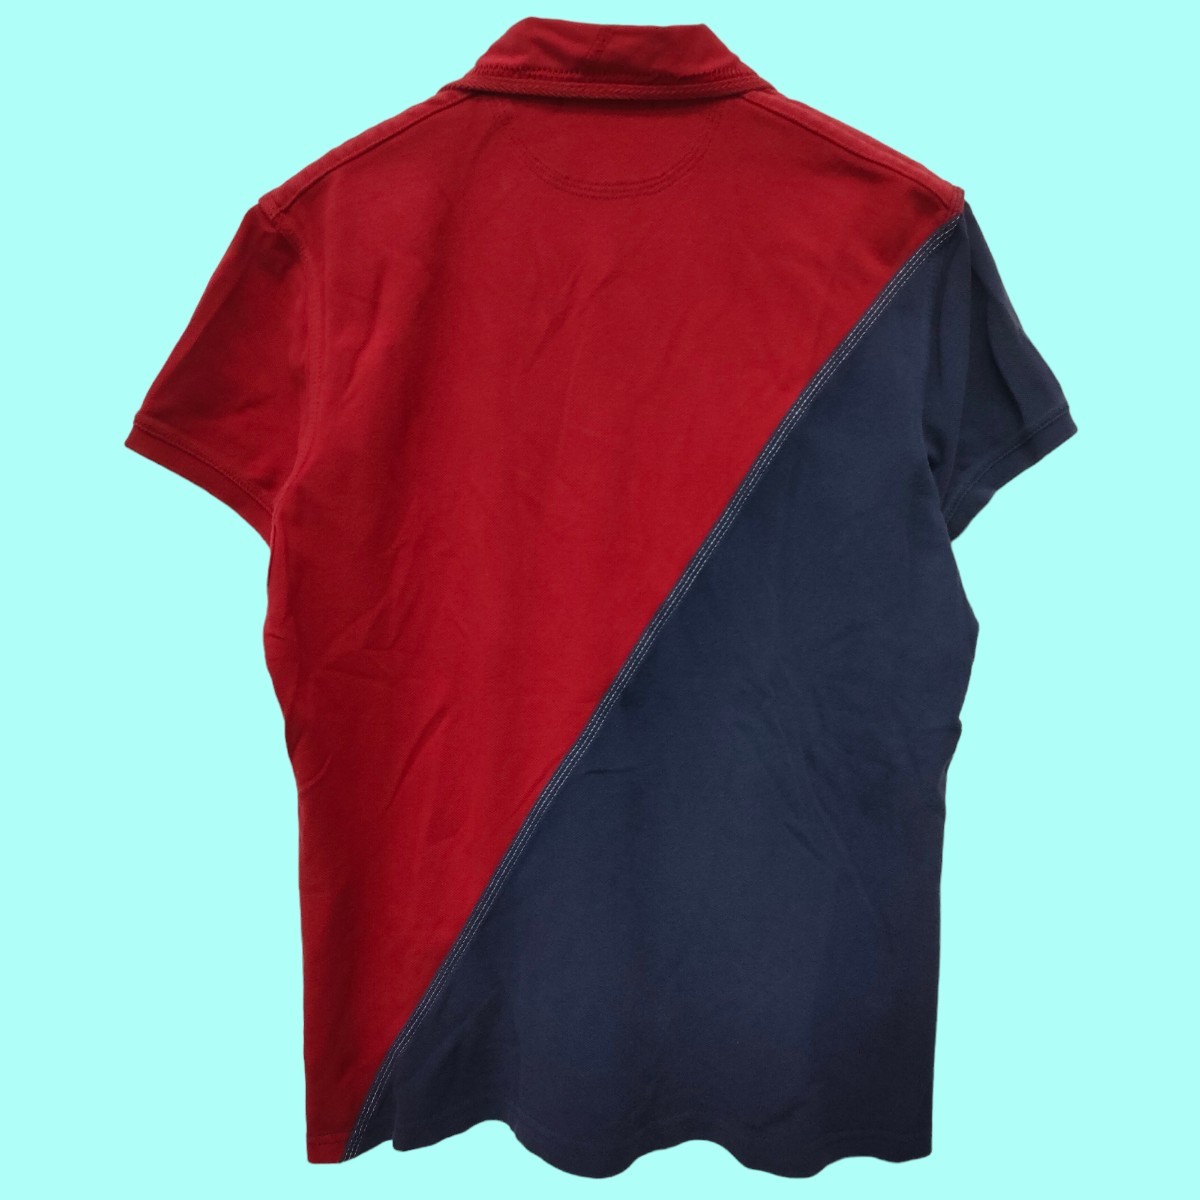  Ralph Lauren RALPH LAUREN рубашка-поло красный × темно-синий мужской весна лето осень . вышивка I-2362